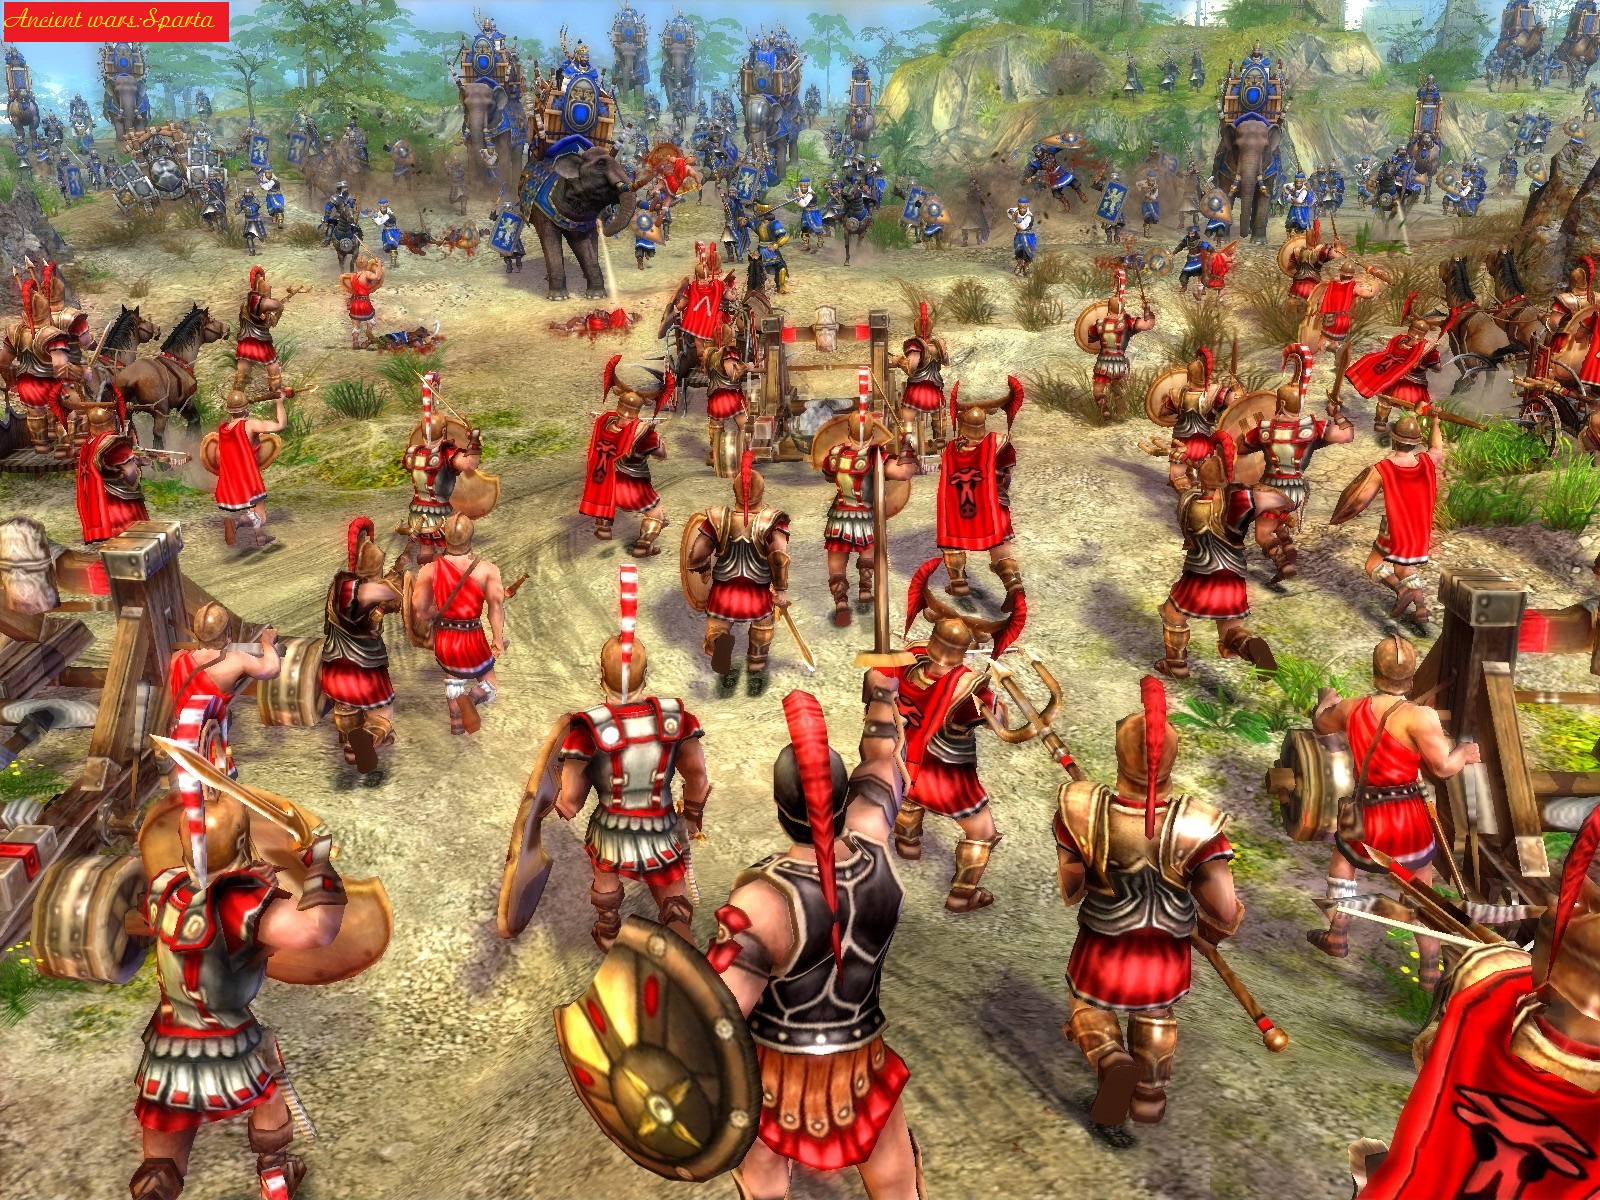 Войны древности: Спарта | Ancient Wars: Sparta